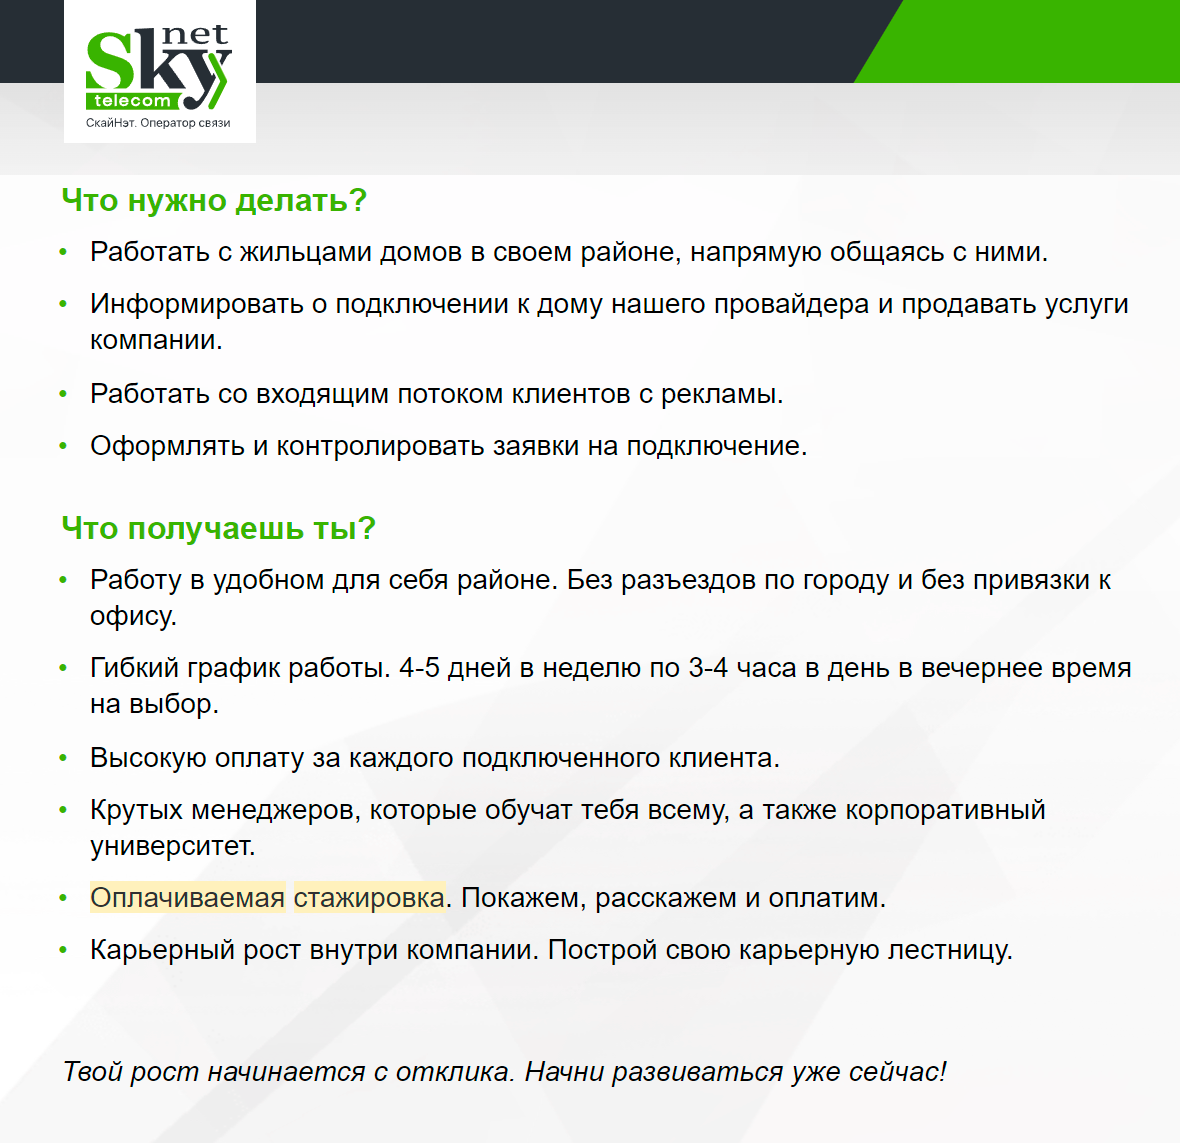 Например, в компании SkyNet ищут начинающих специалистов по&nbsp;подключению услуг связи. График гибкий, а&nbsp;стажировка оплачивается